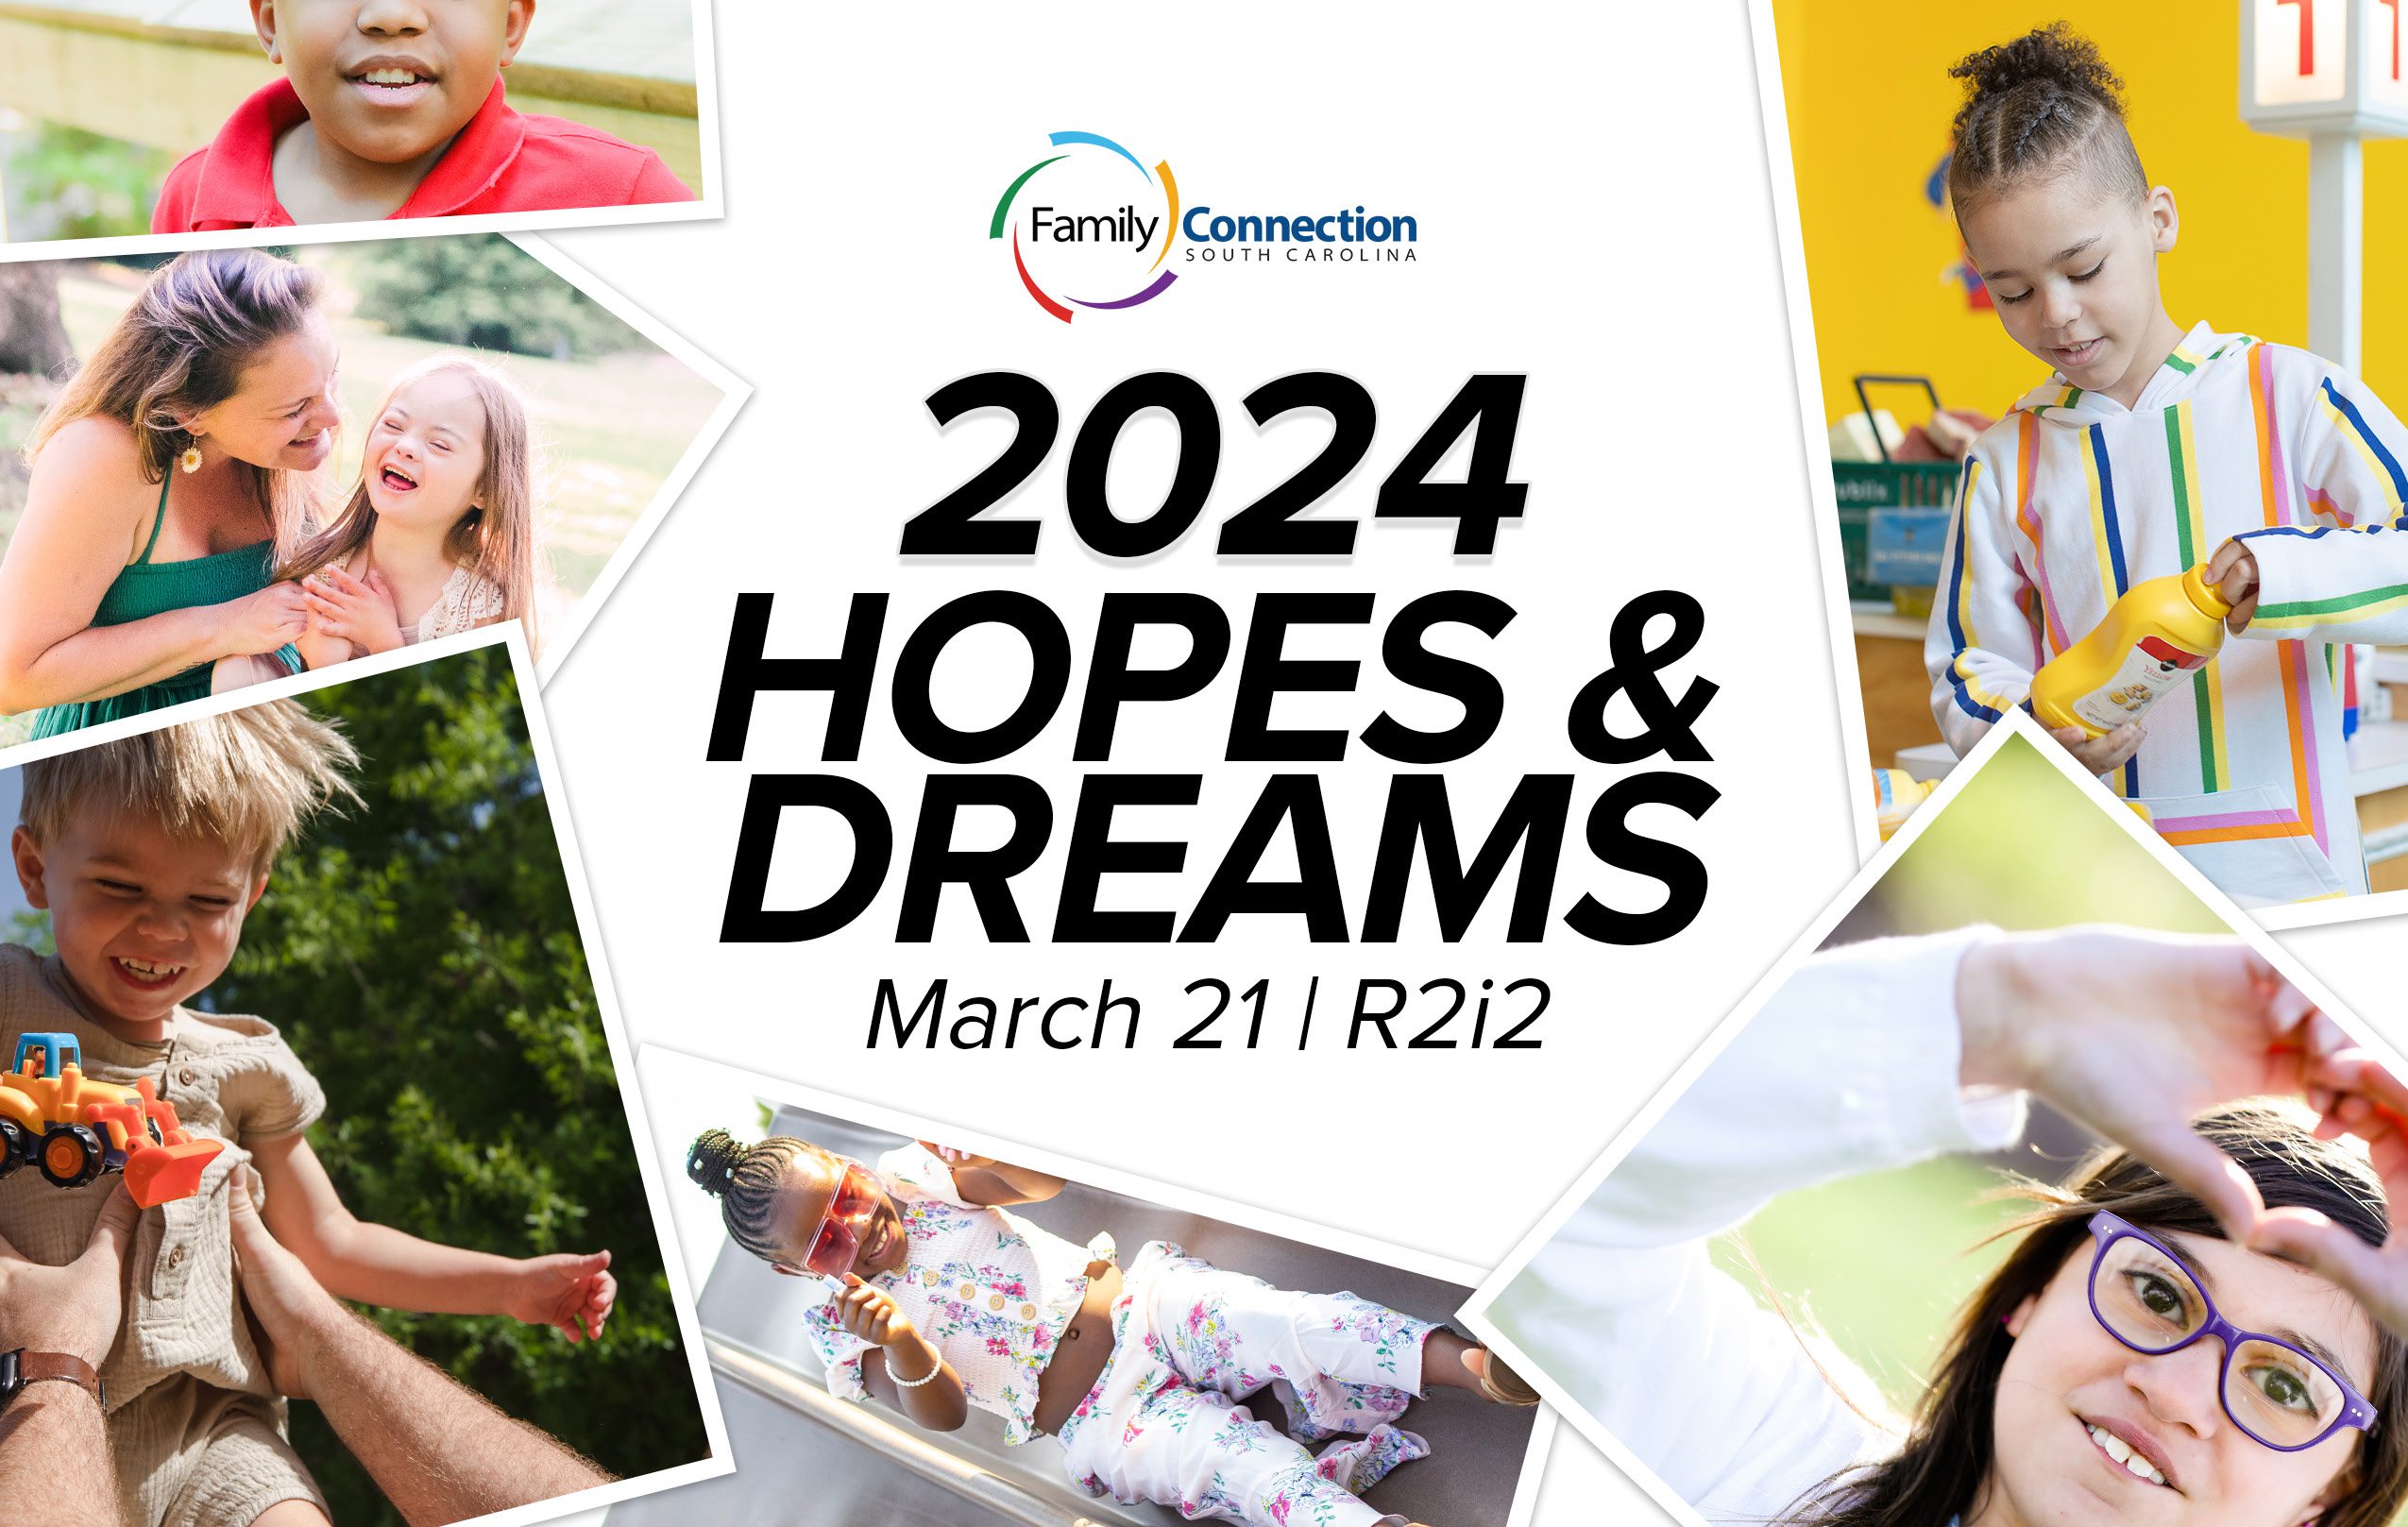 2024 Hopes & Dreams March 21, R2i2